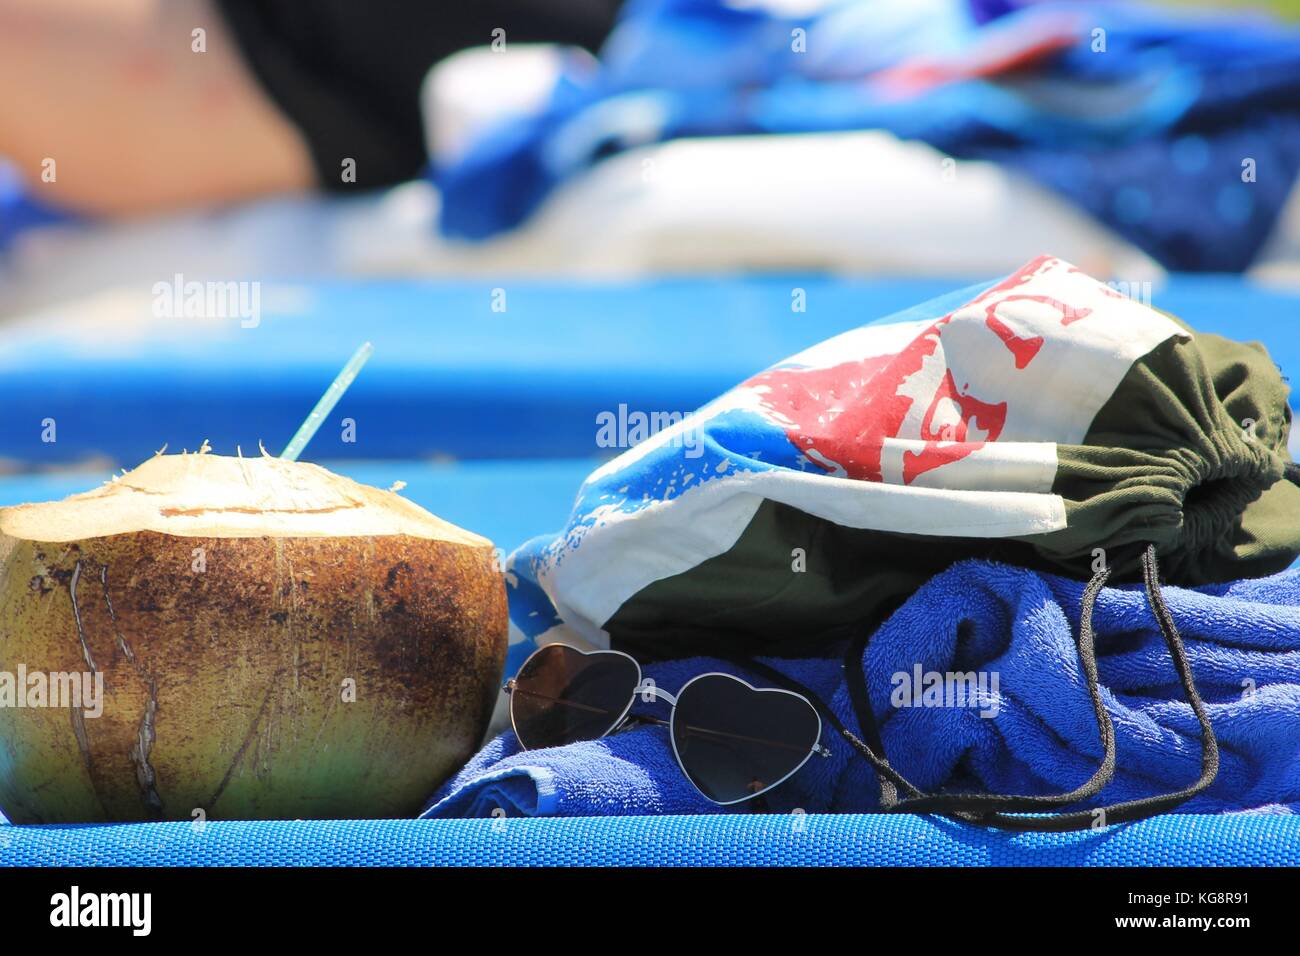 Spiaggia cubana giorno accessori sulla sedia spiaggia: noce di cocco con paglia, a forma di cuore ad occhiali da sole, Cuba borsa da spiaggia e telo da spiaggia Foto Stock